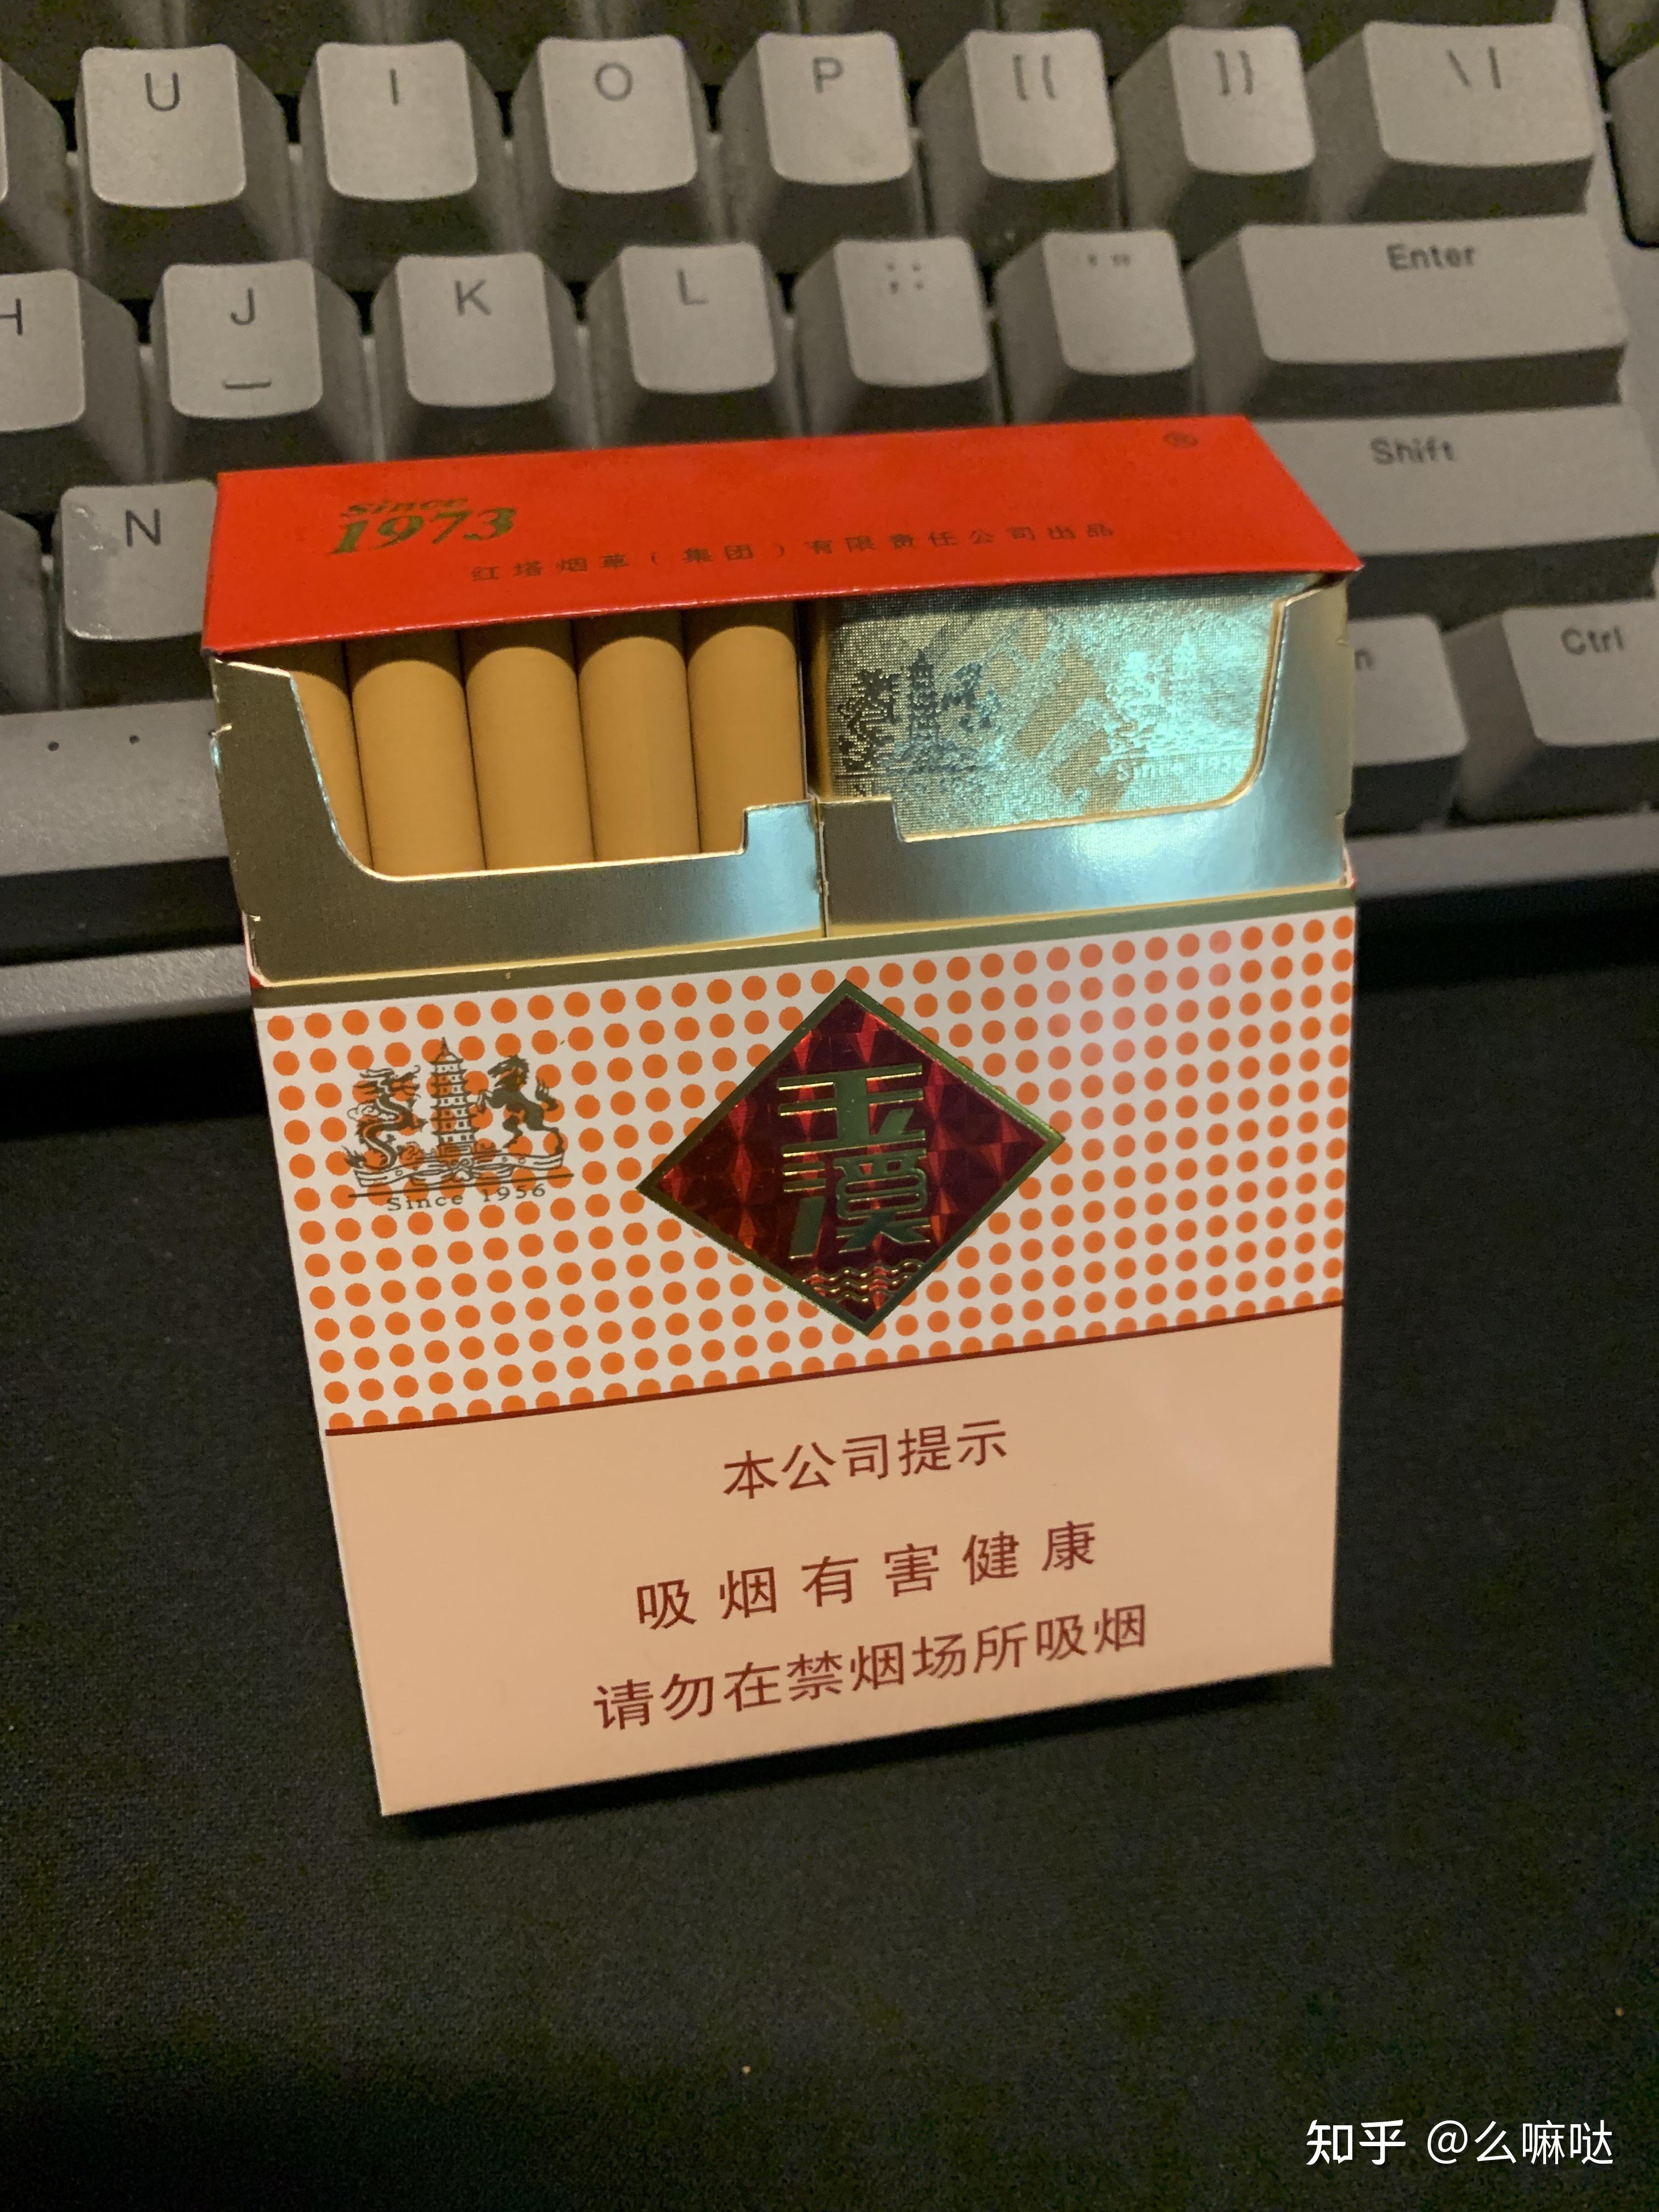 吾爱吾烟-----软玉溪 - 香烟品鉴 - 烟悦网论坛